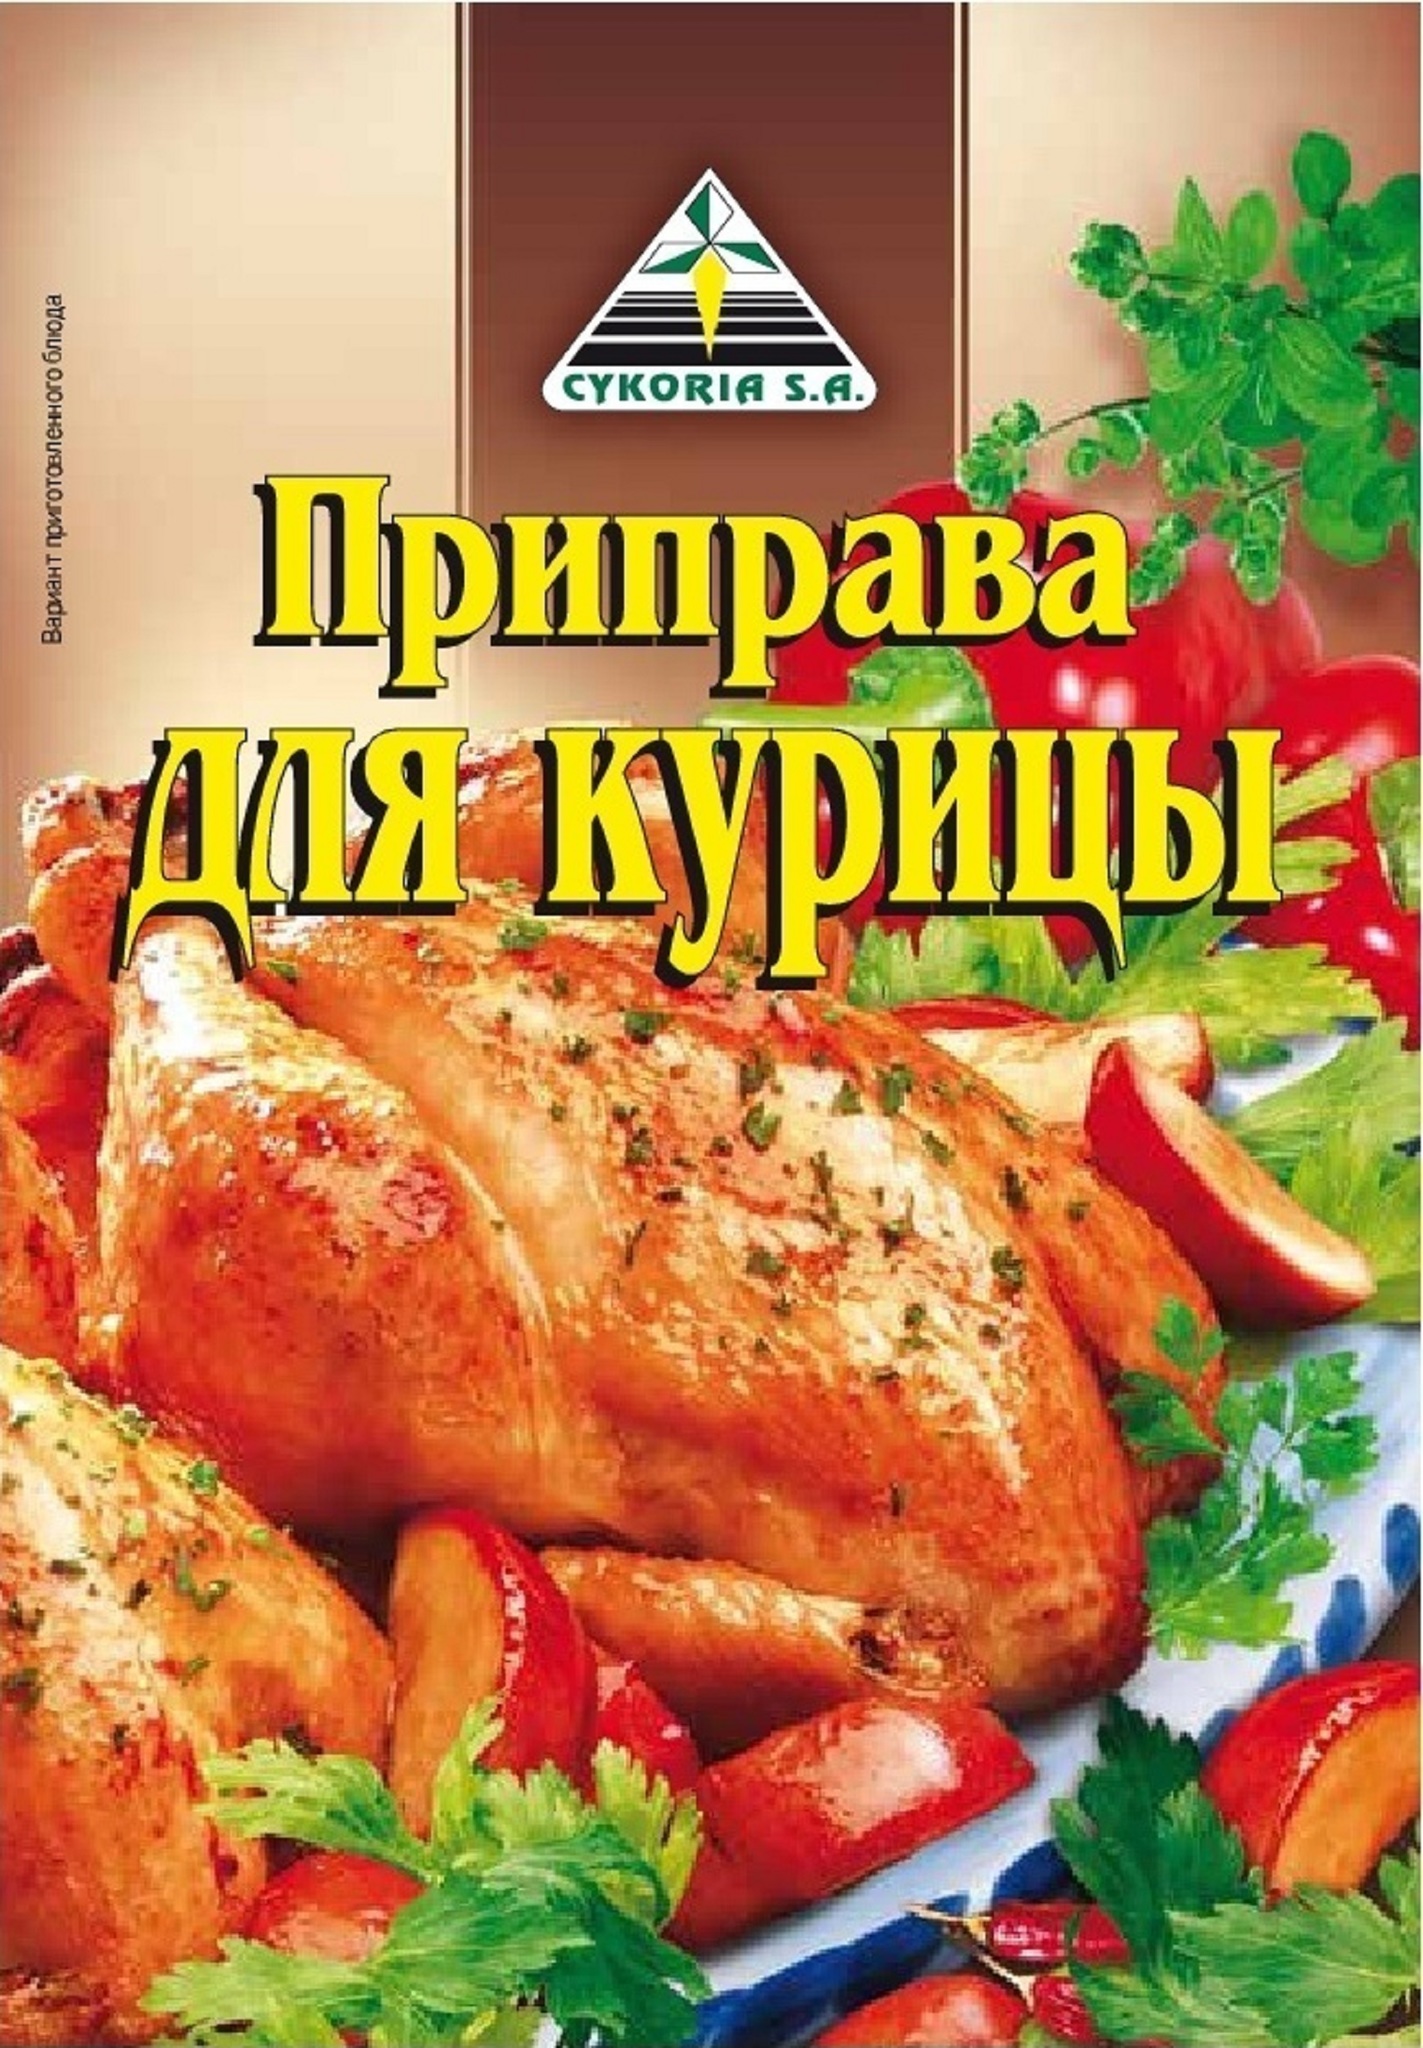 Приправа для курицы, 40 гр.– купить в интернет-магазине, цена, заказ online